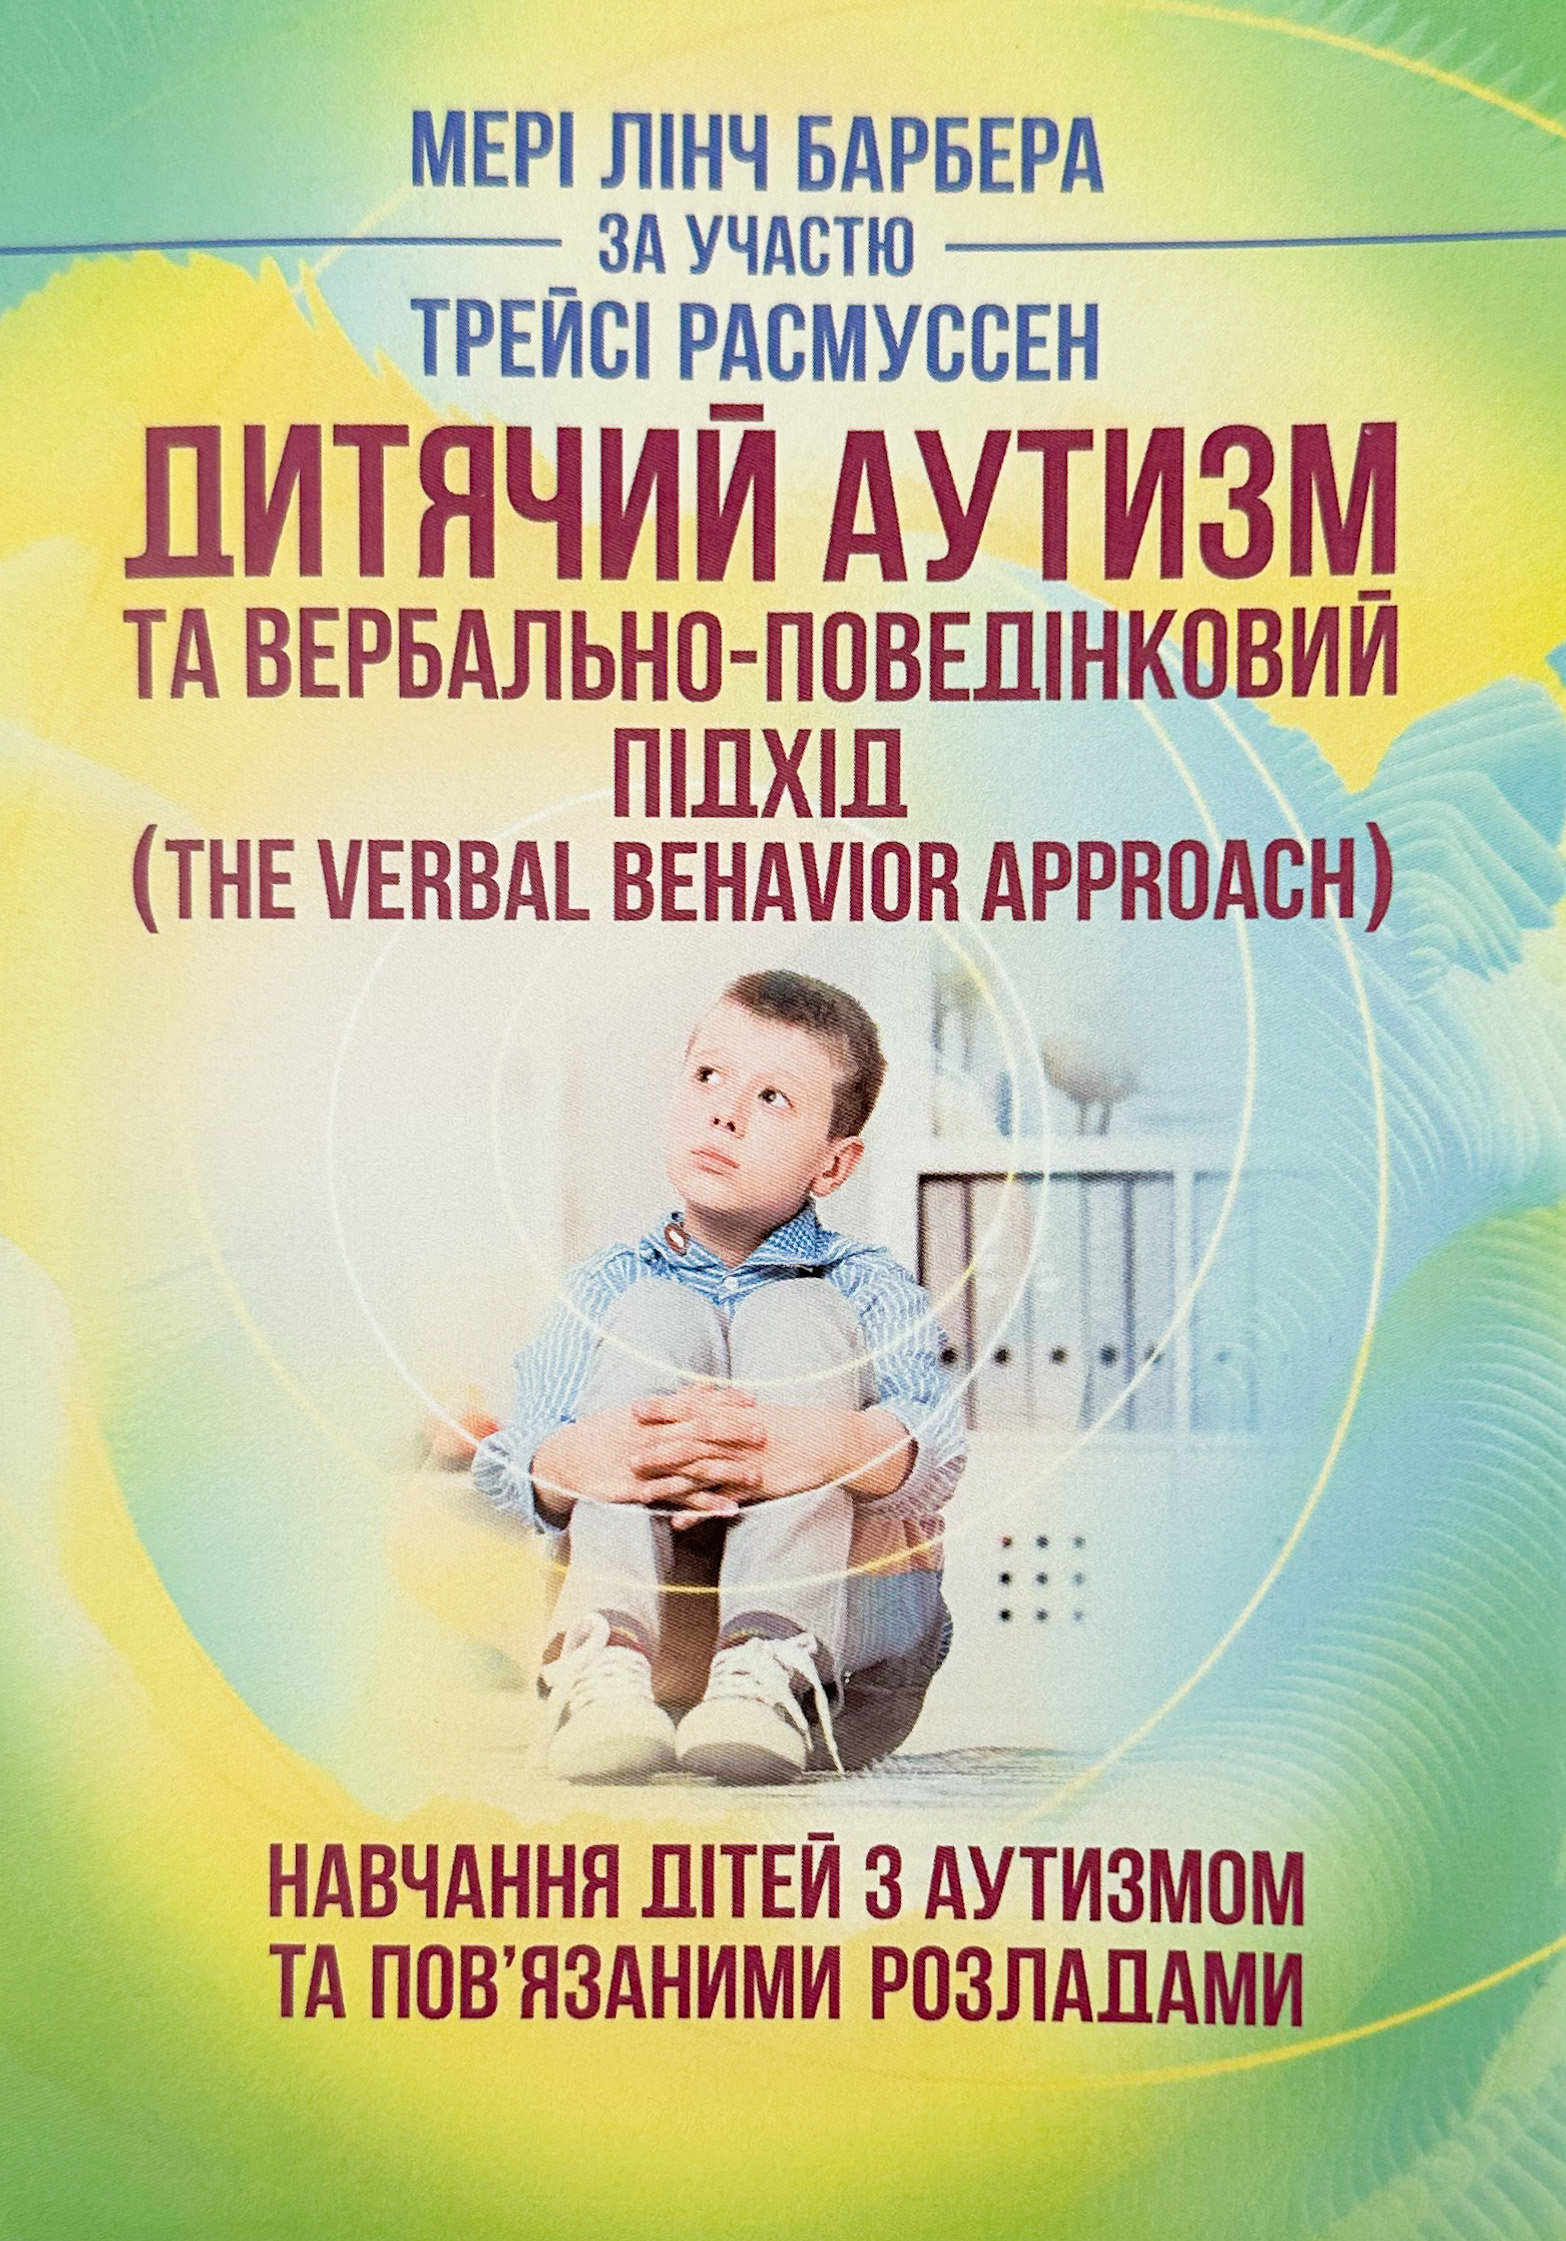 Дитячий аутизм та вербально-поведінковий підхід